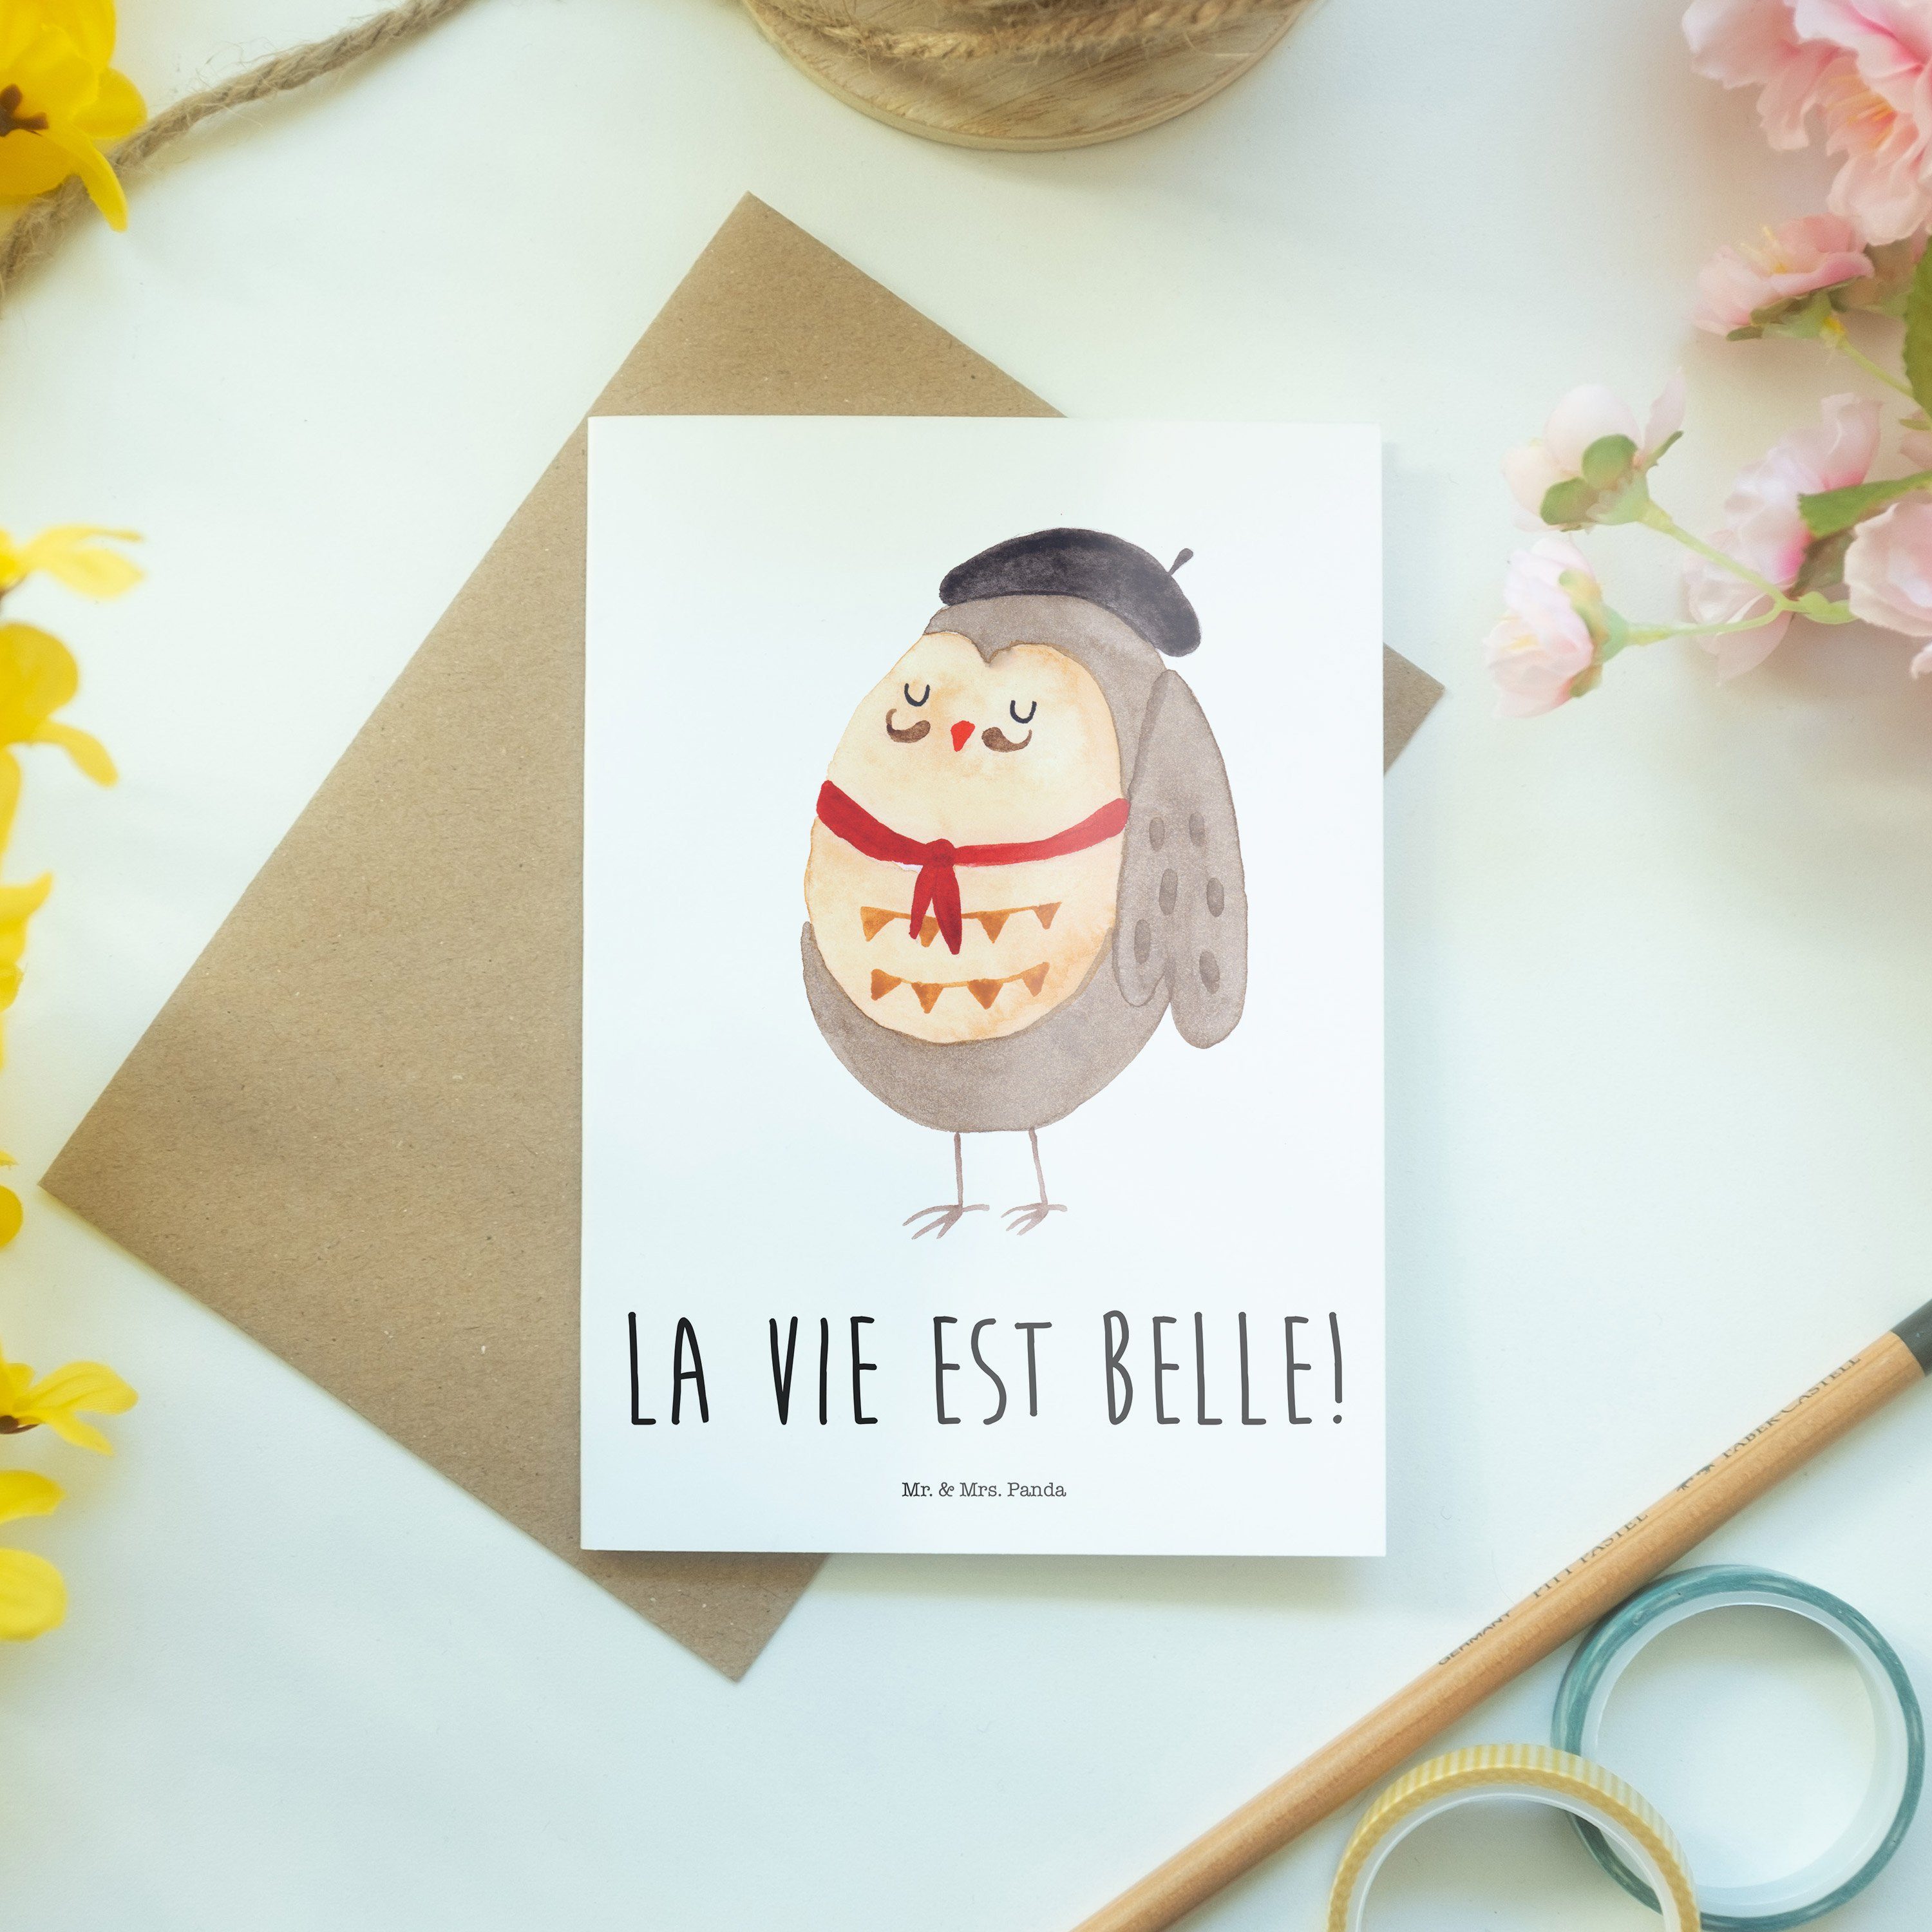 Mr. & Mrs. Panda Grußkarte - Klappkar belle, est - Weiß Geschenk, vie La hibou, Französisch Eule